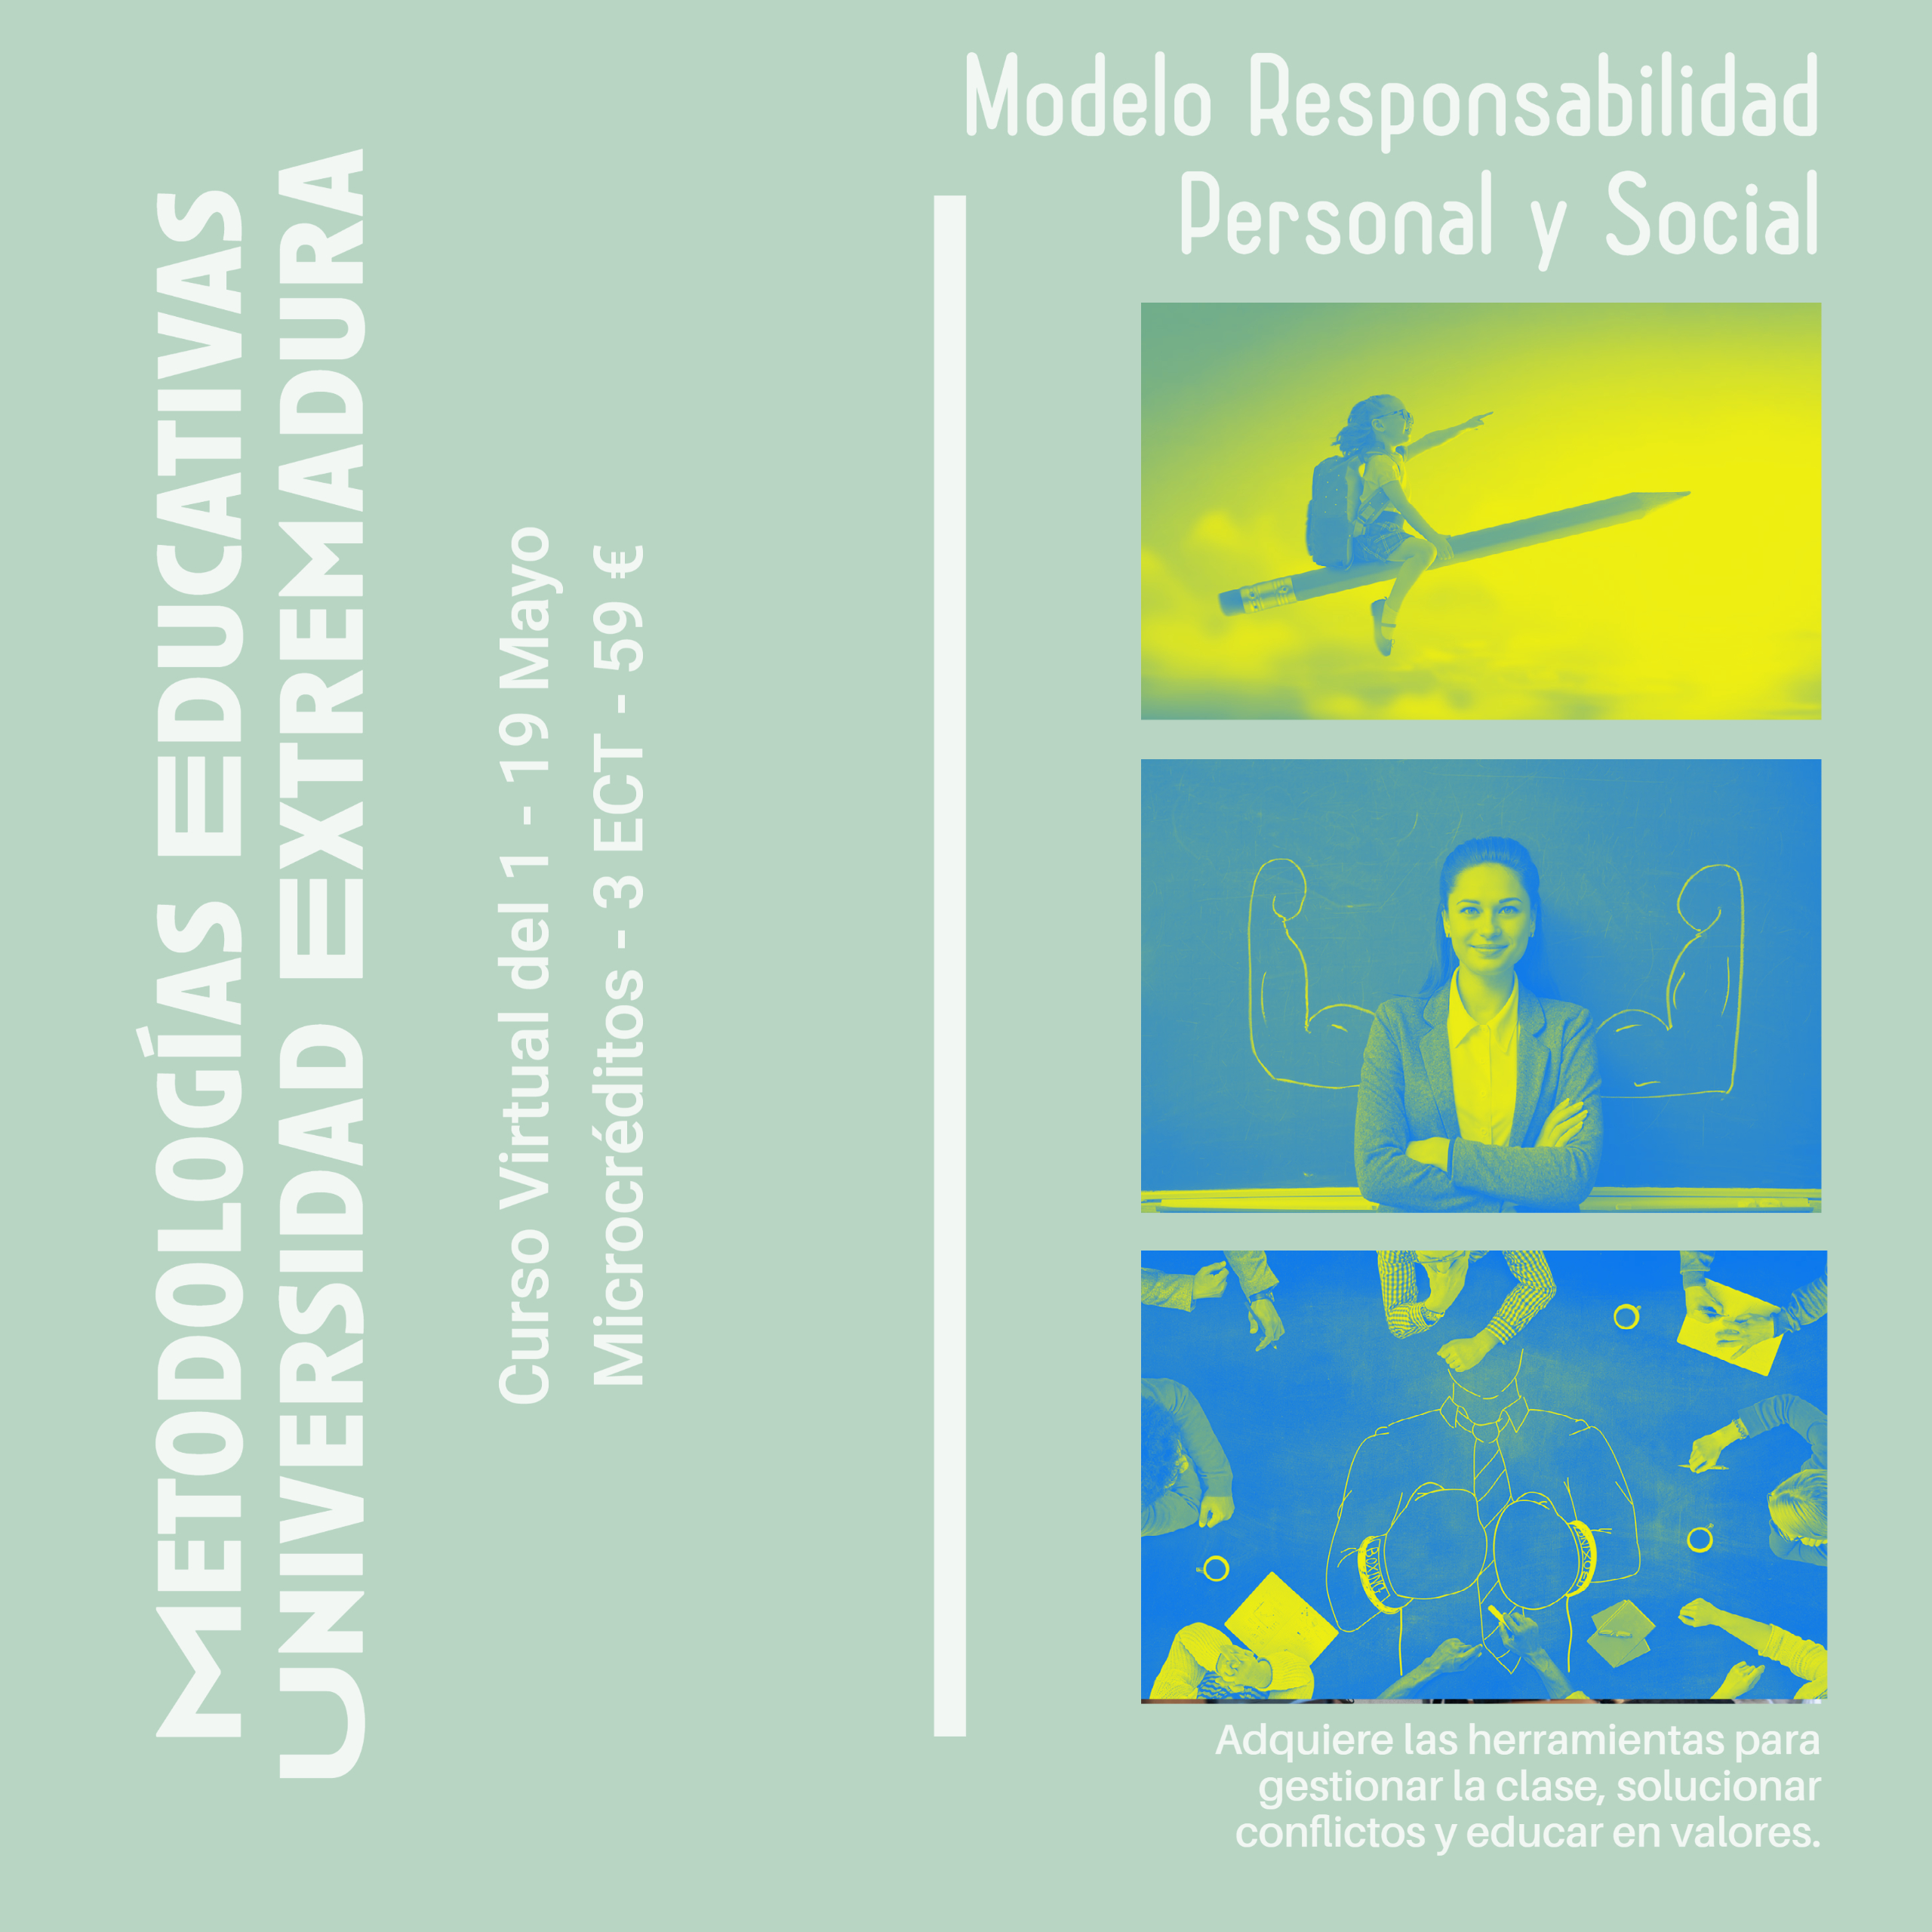 Modelo Responsabilidad Personal y Social
Curso de la Universidad Extremadura. 
3ECT - 59 euros